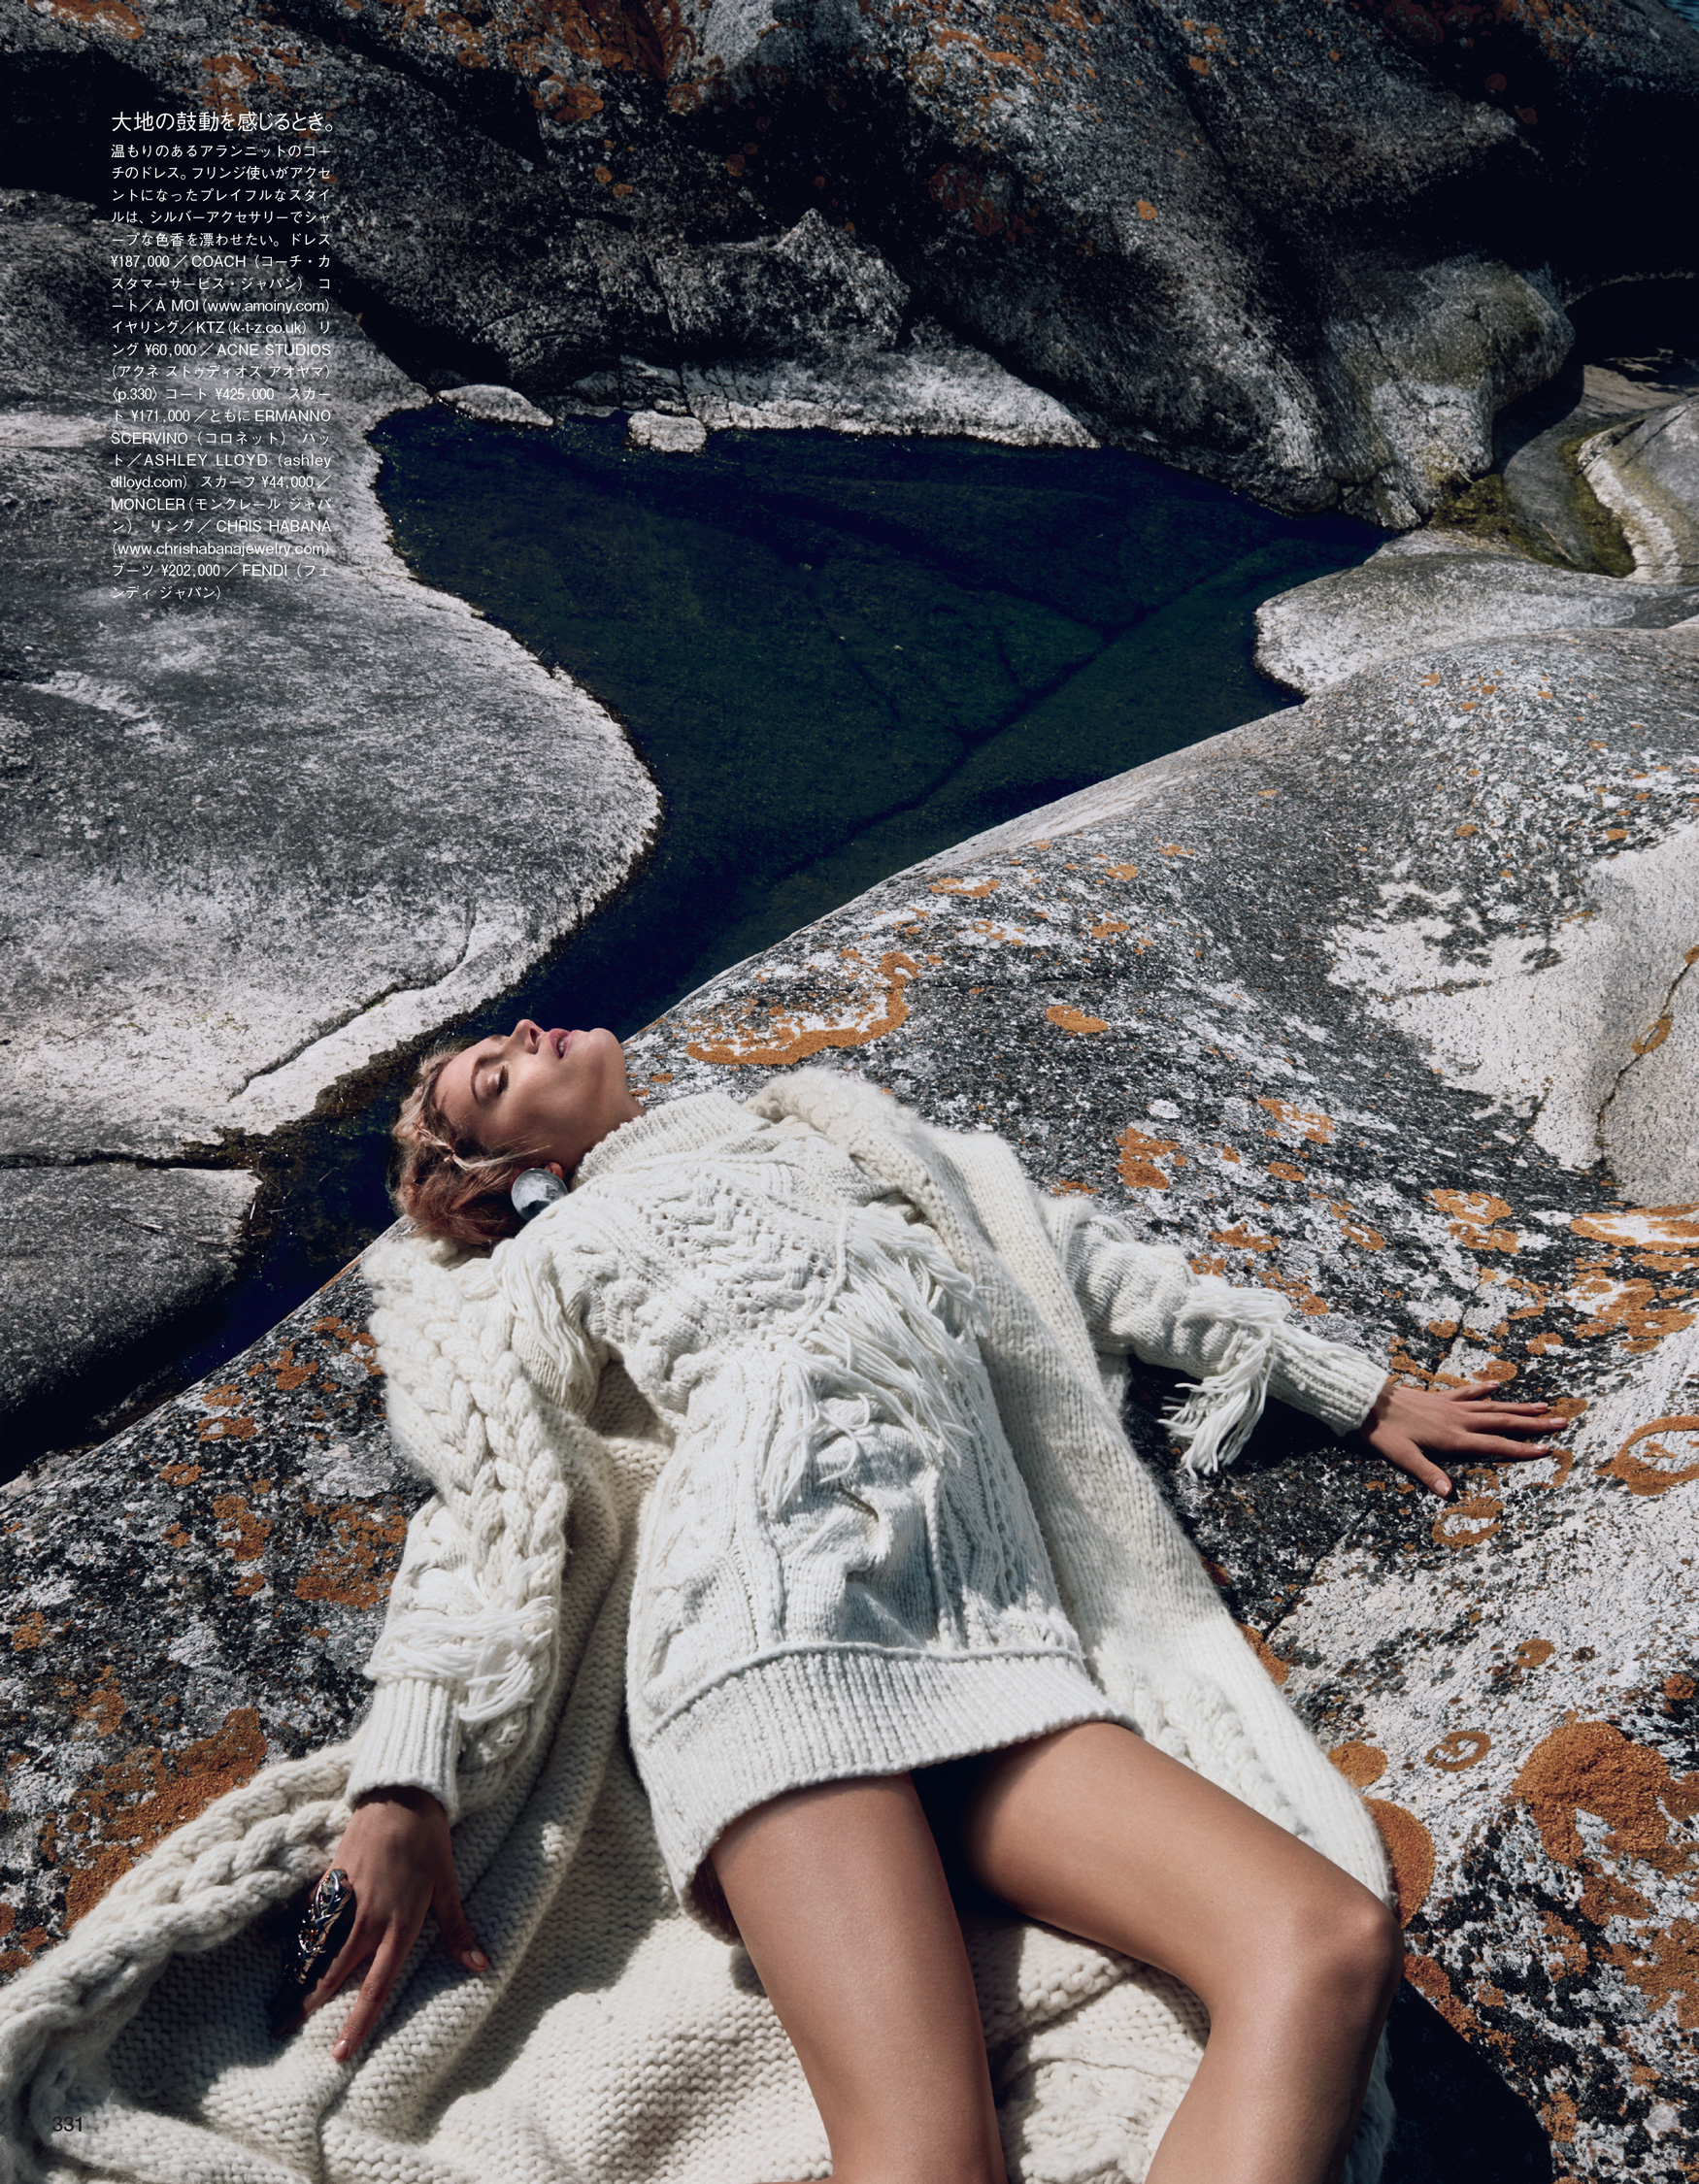 Giovanna-Battaglia-Vogue-Japan-The-Nordic-Queen-October-2015-Emma-Summerton-6.jpg